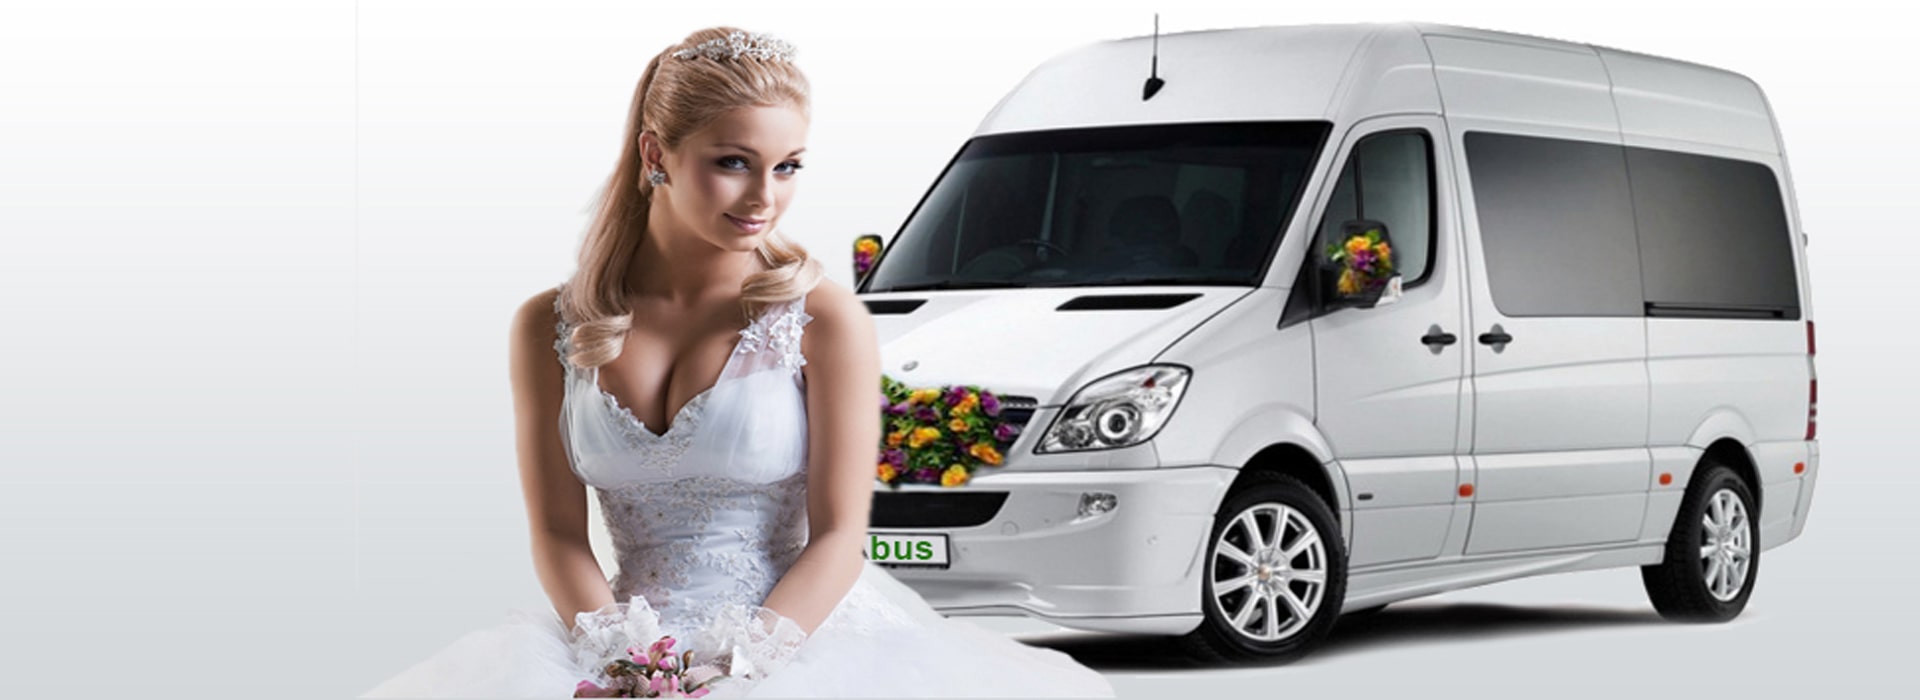 Аренда микроавтобуса на свадьбу и в чём его преимущество